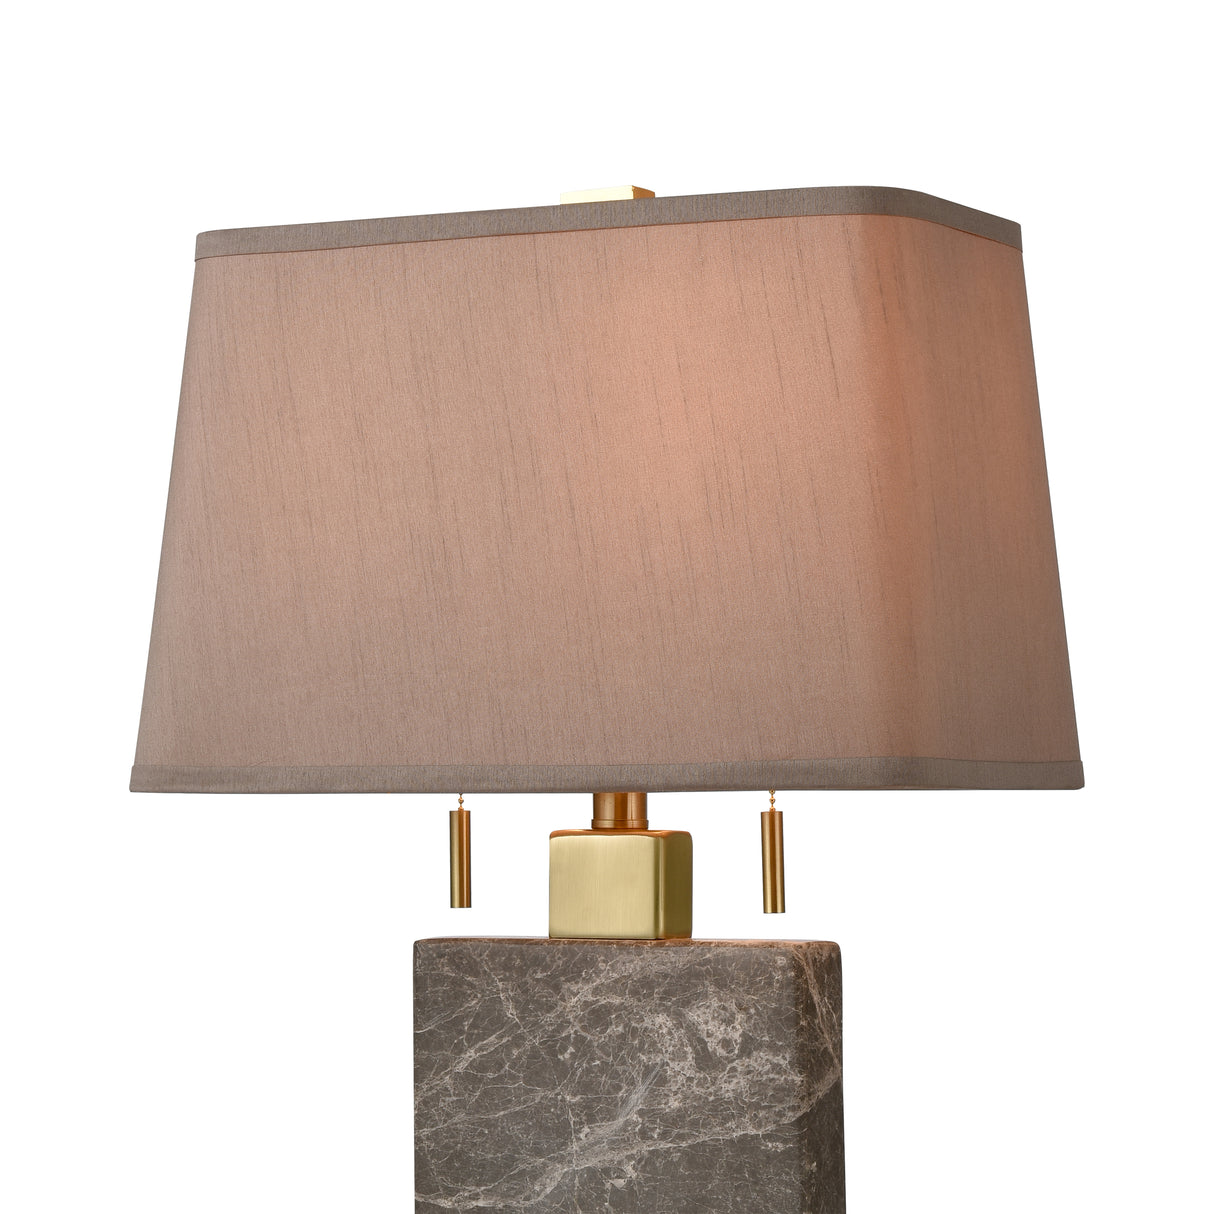 Elk D4704 Windsor 27'' High 2-Light Table Lamp - Honey Brass